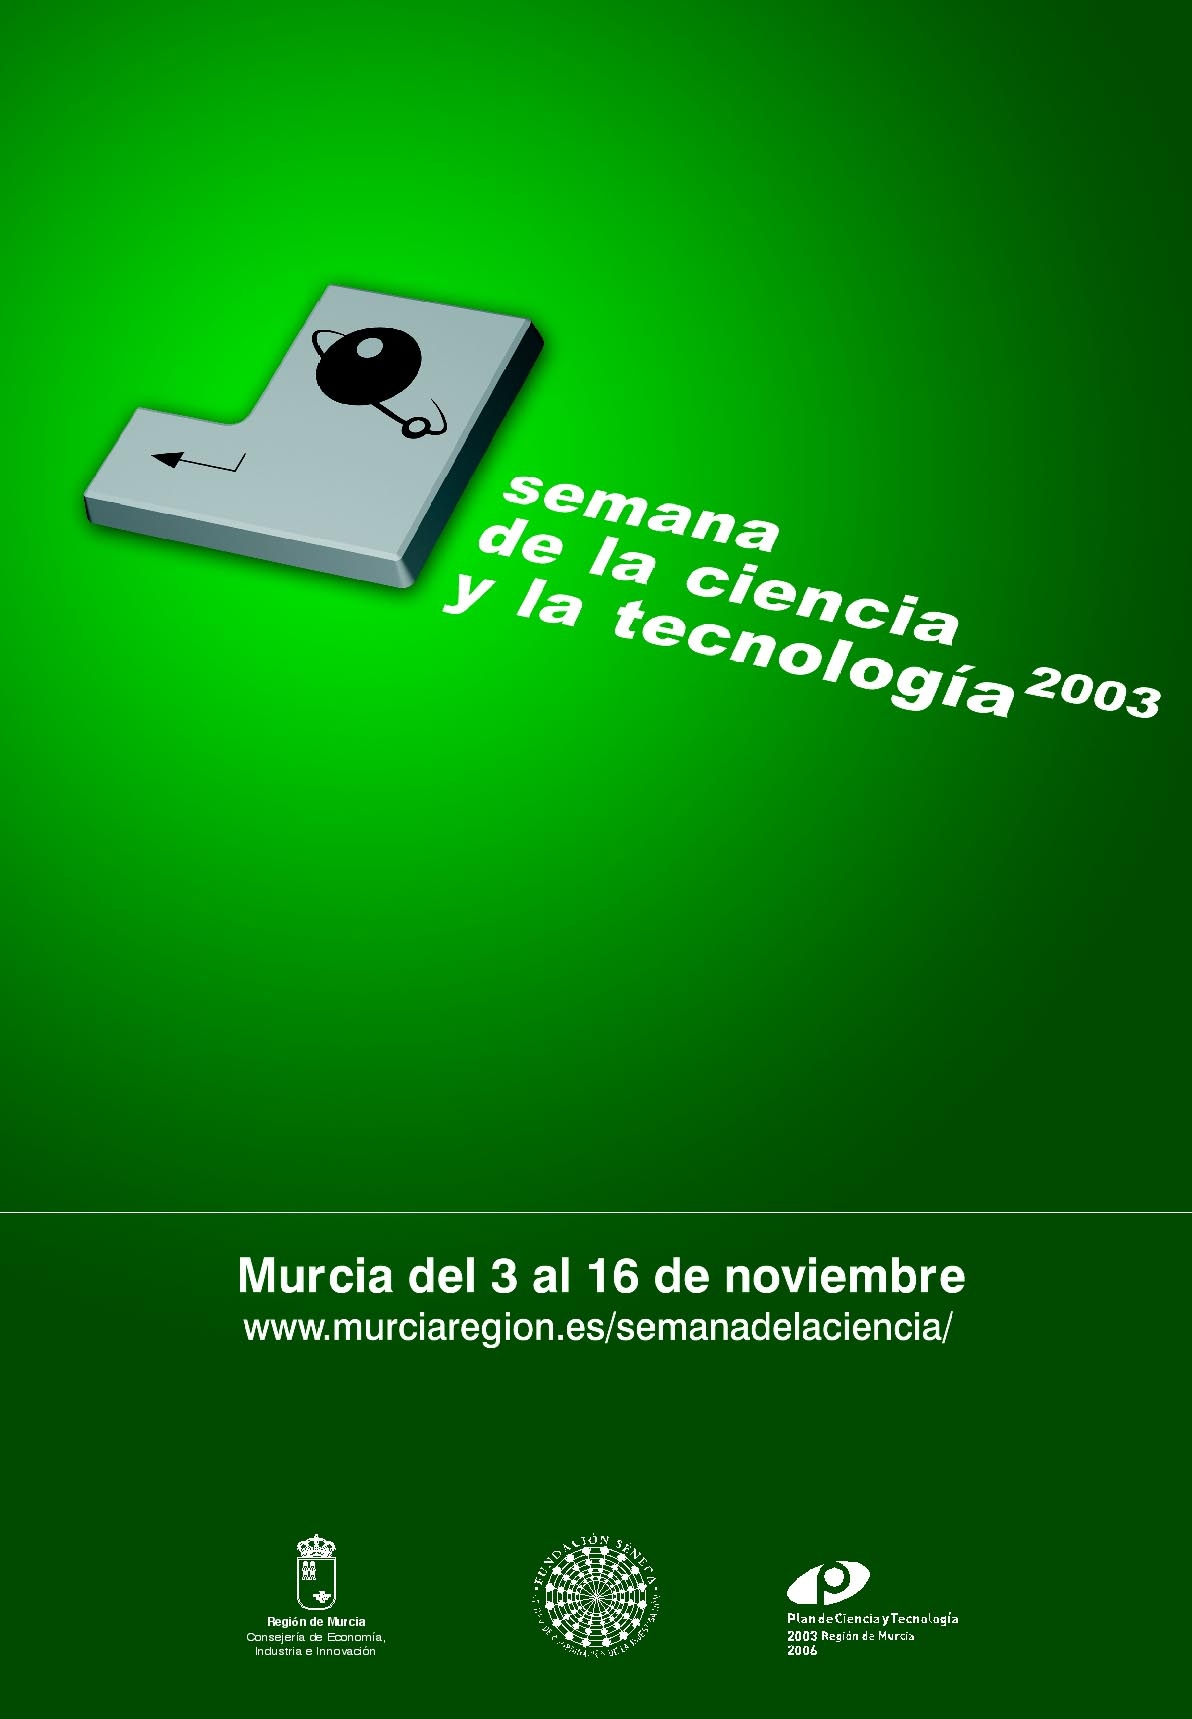 Semana de la Ciencia y la Tecnología 2003